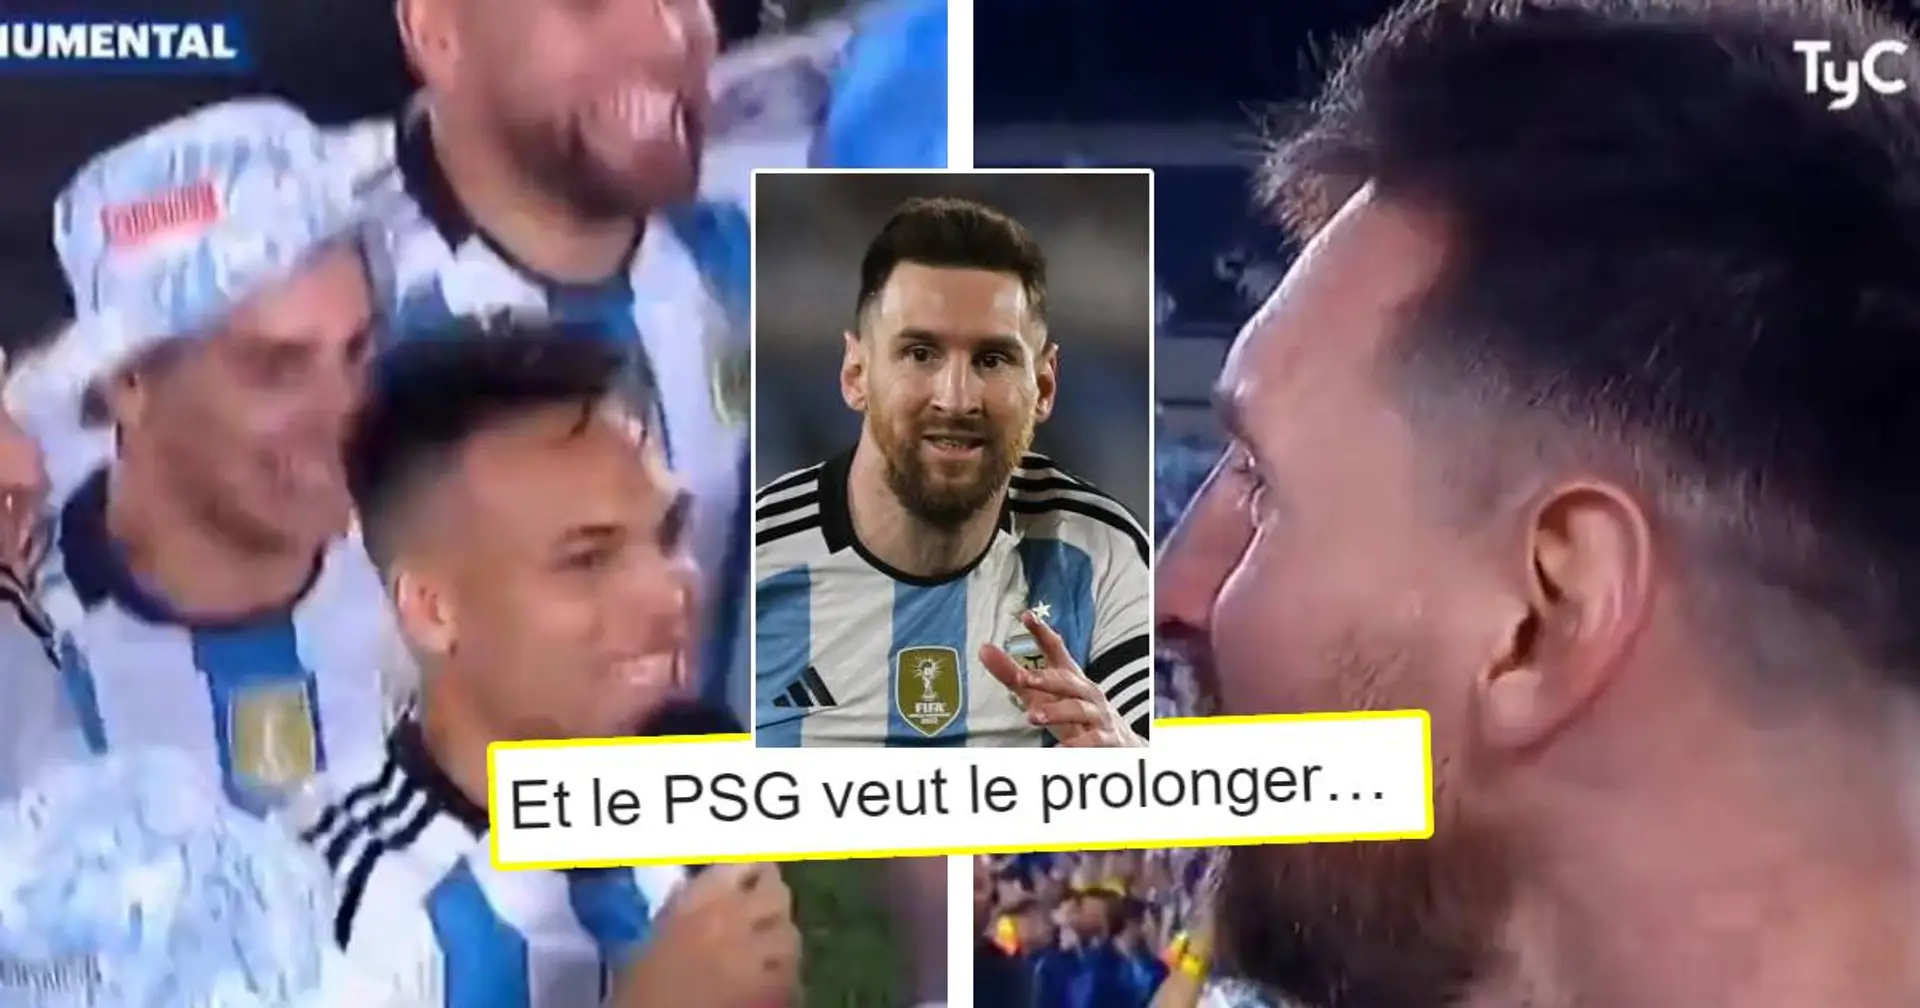 "Sifflez le comme jamais" : Des fans du PSG en veulent à Messi pour sa célébration avec l'Argentine